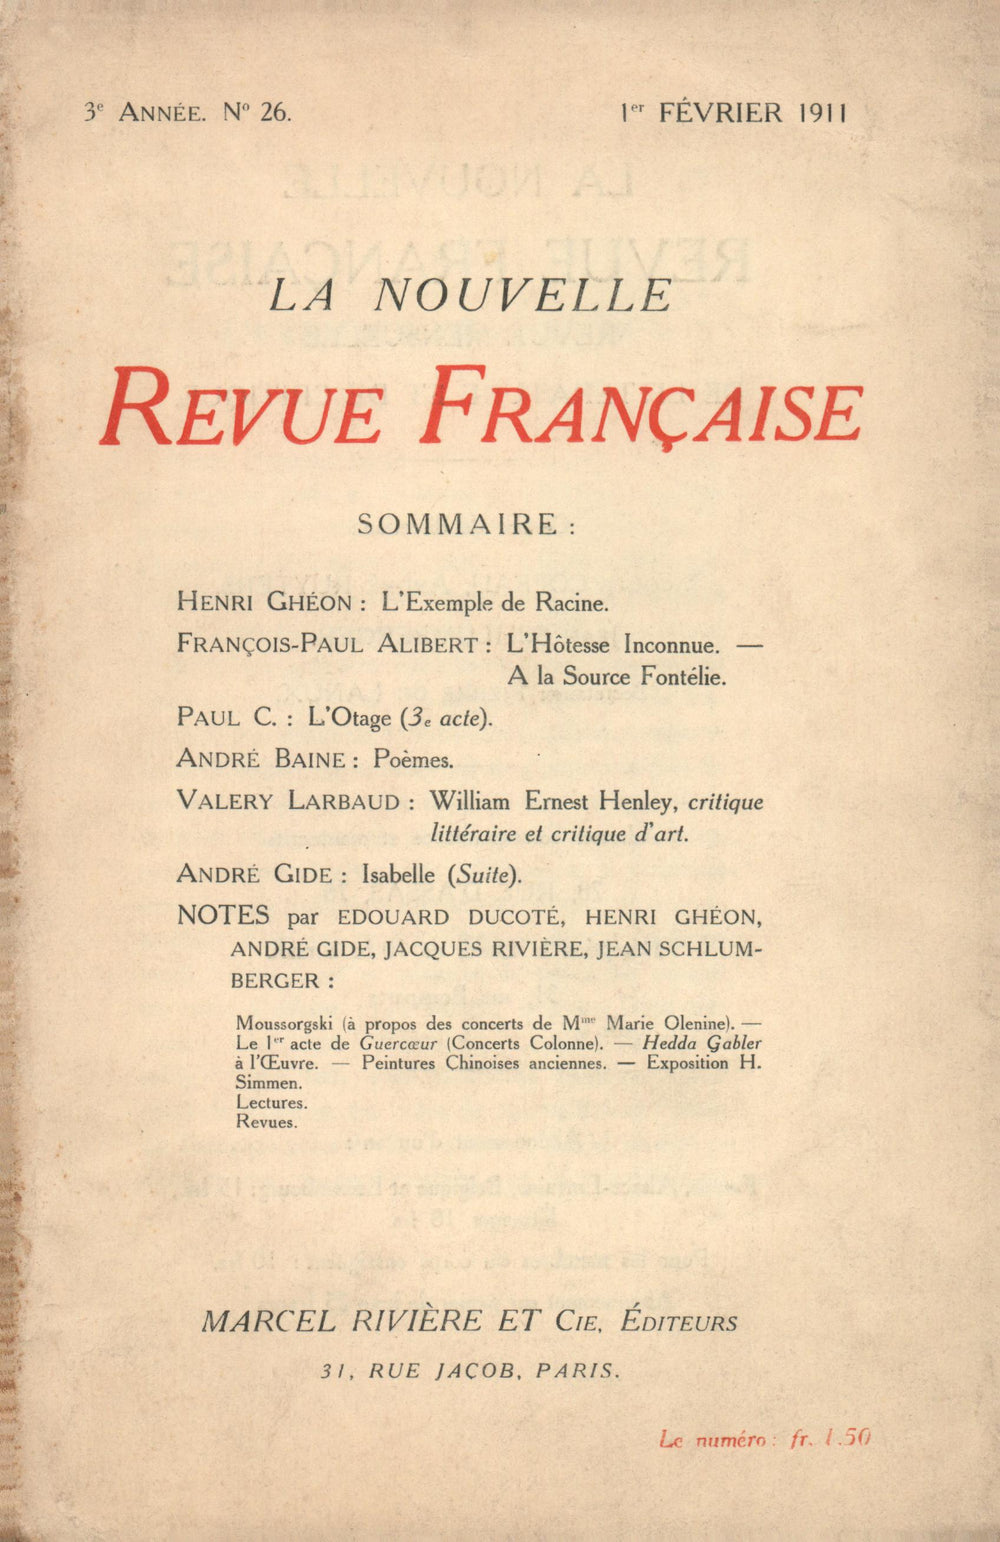 La Nouvelle Revue Française N' 26 (Février 1911)